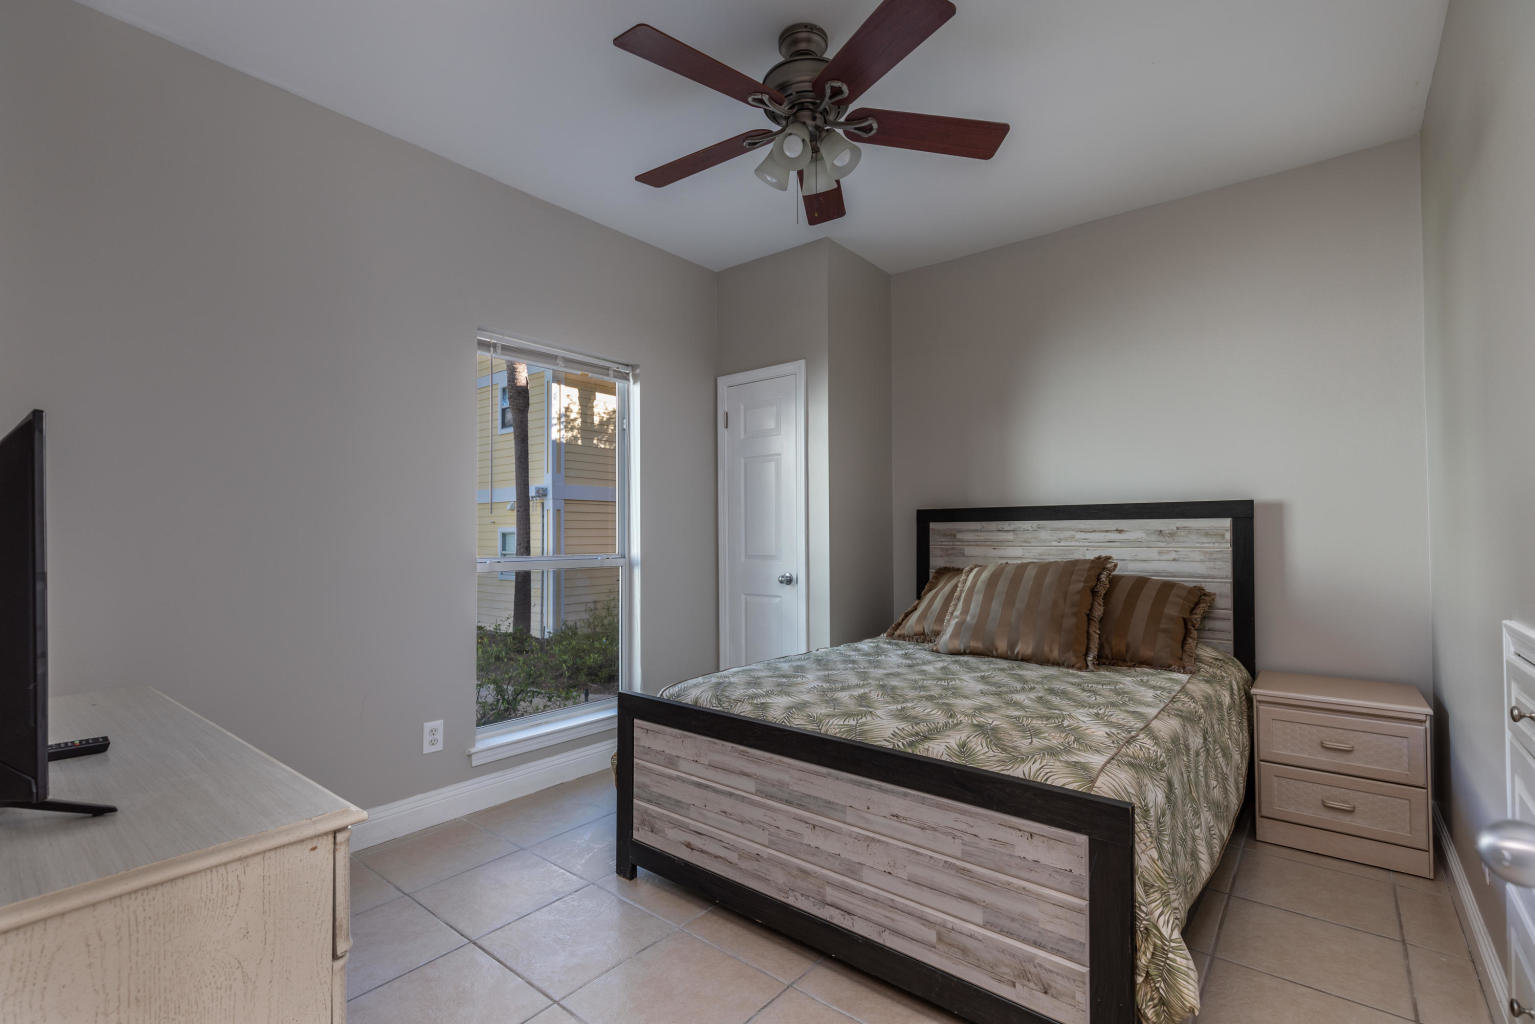 Bedroom at Nantucket Cottages, Destin, FL